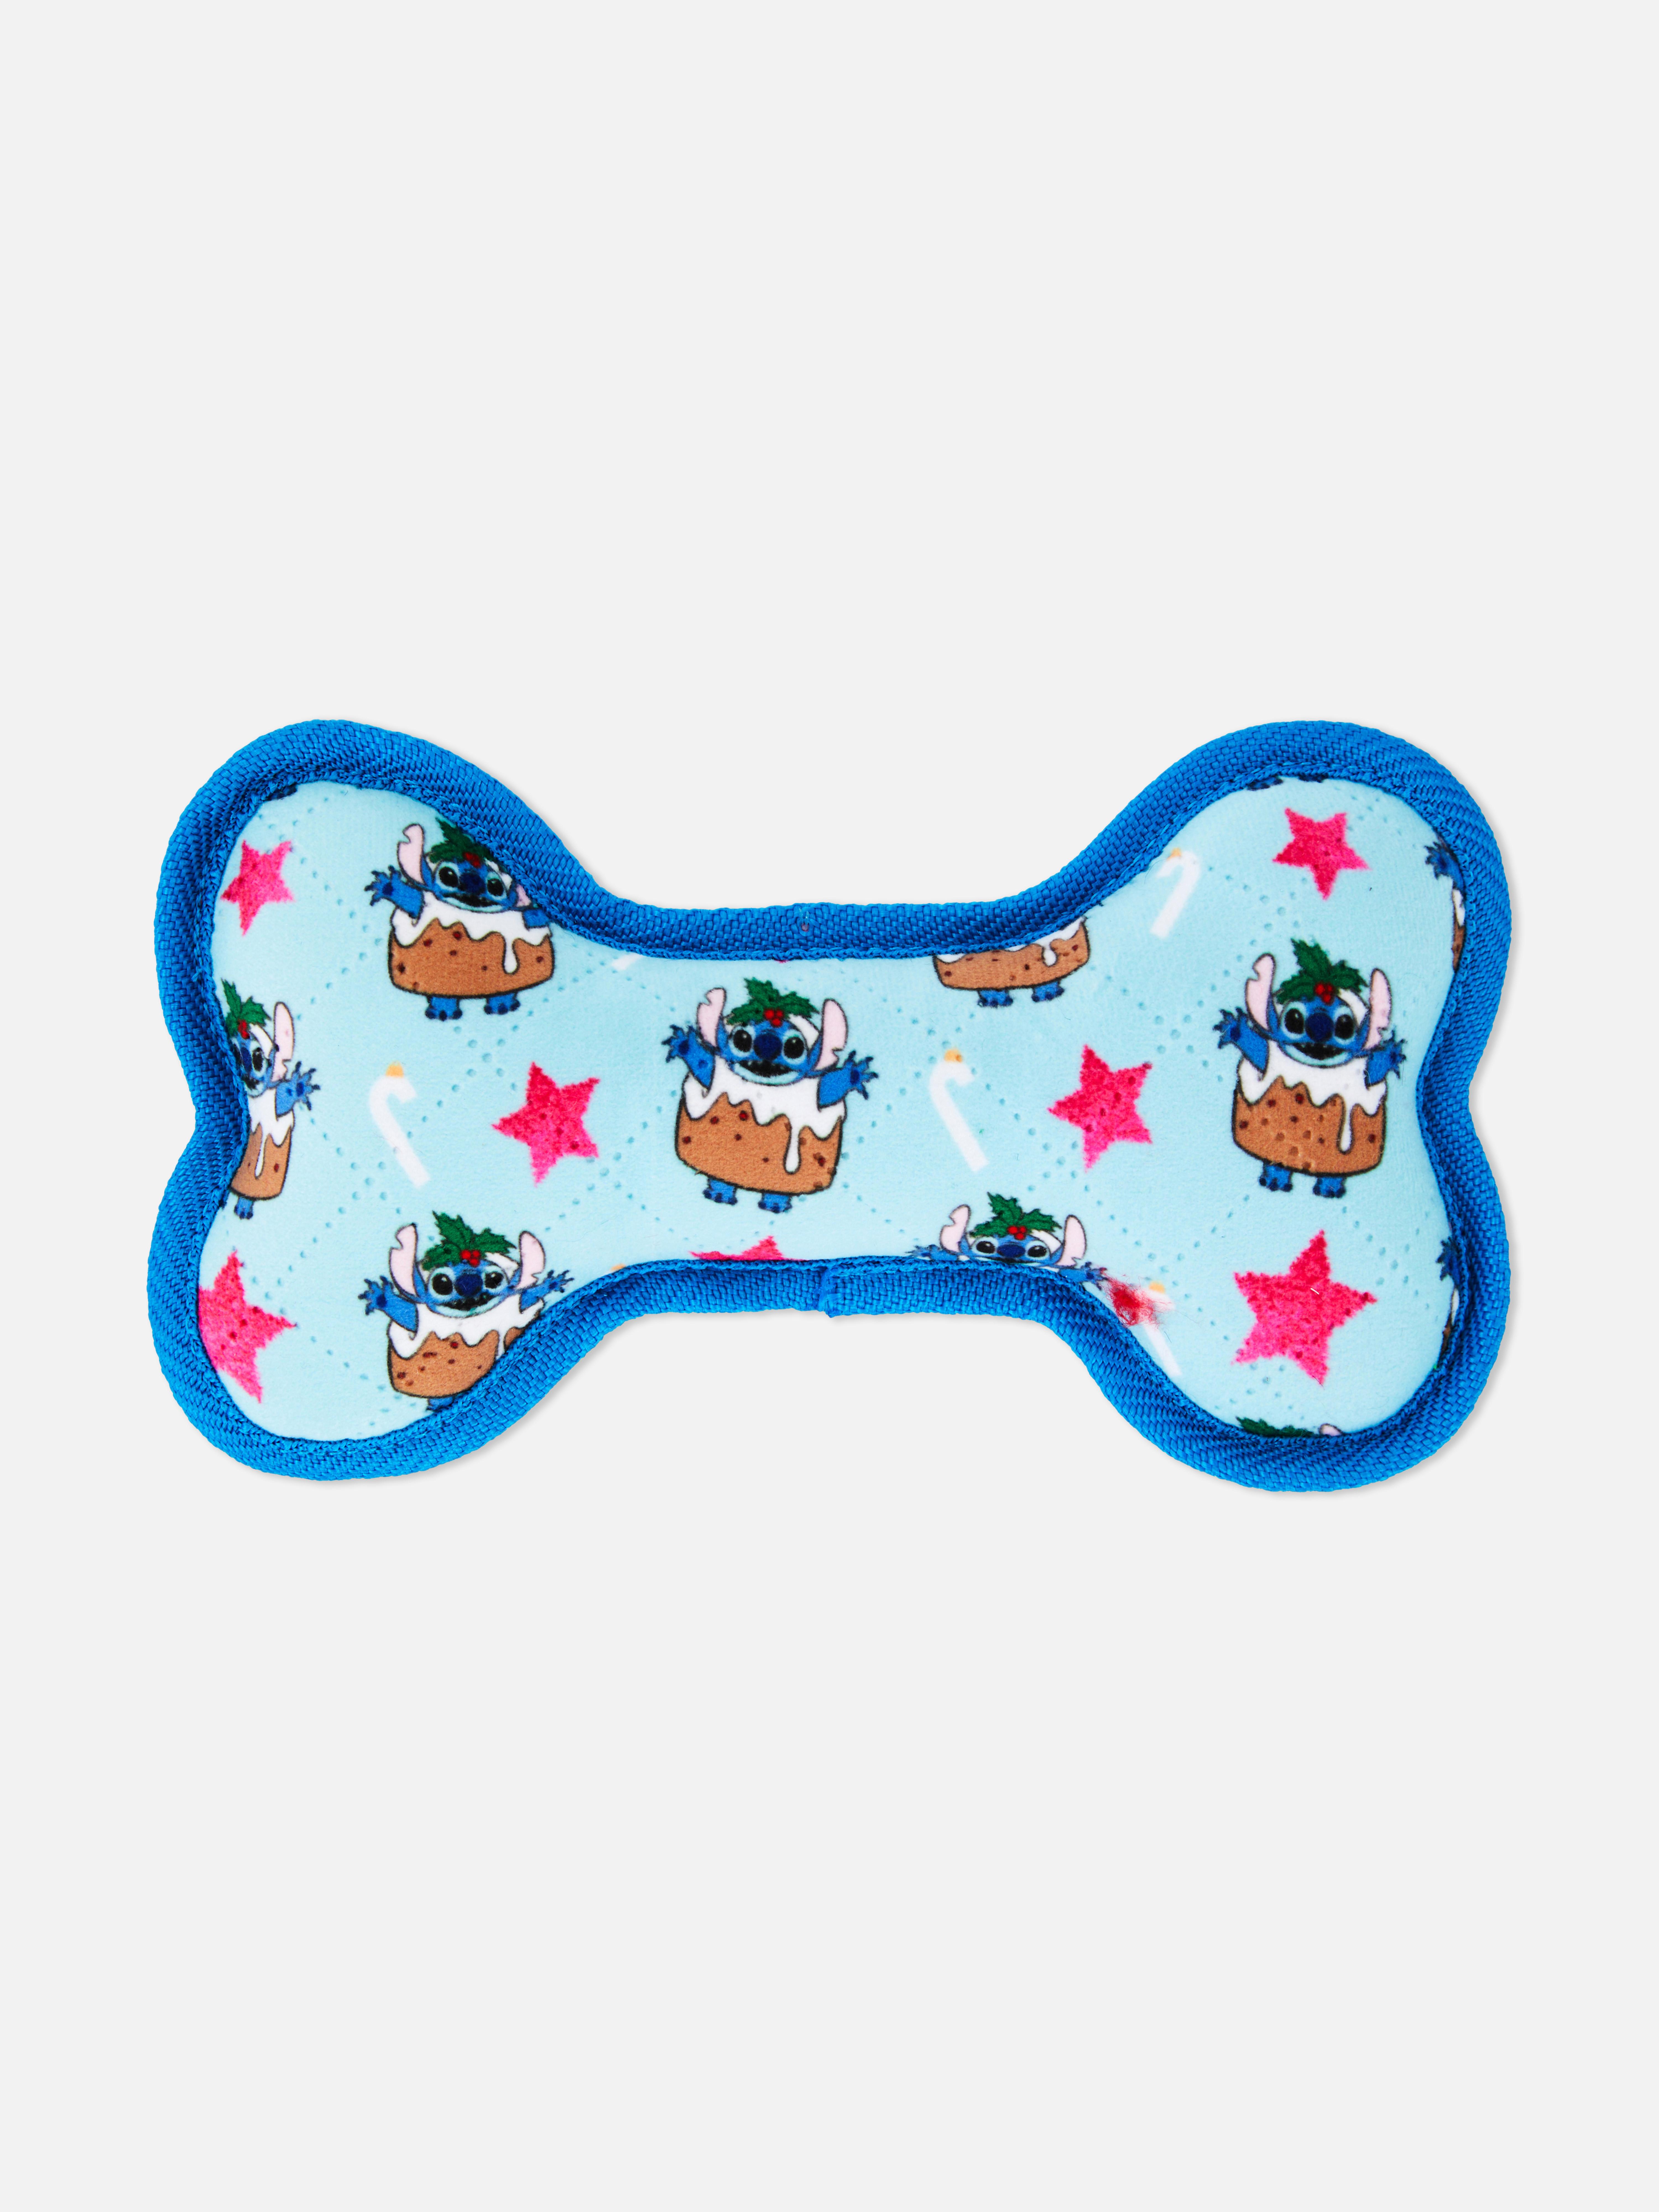 Disney’s Lilo & Stitch Christmas Bone Toy